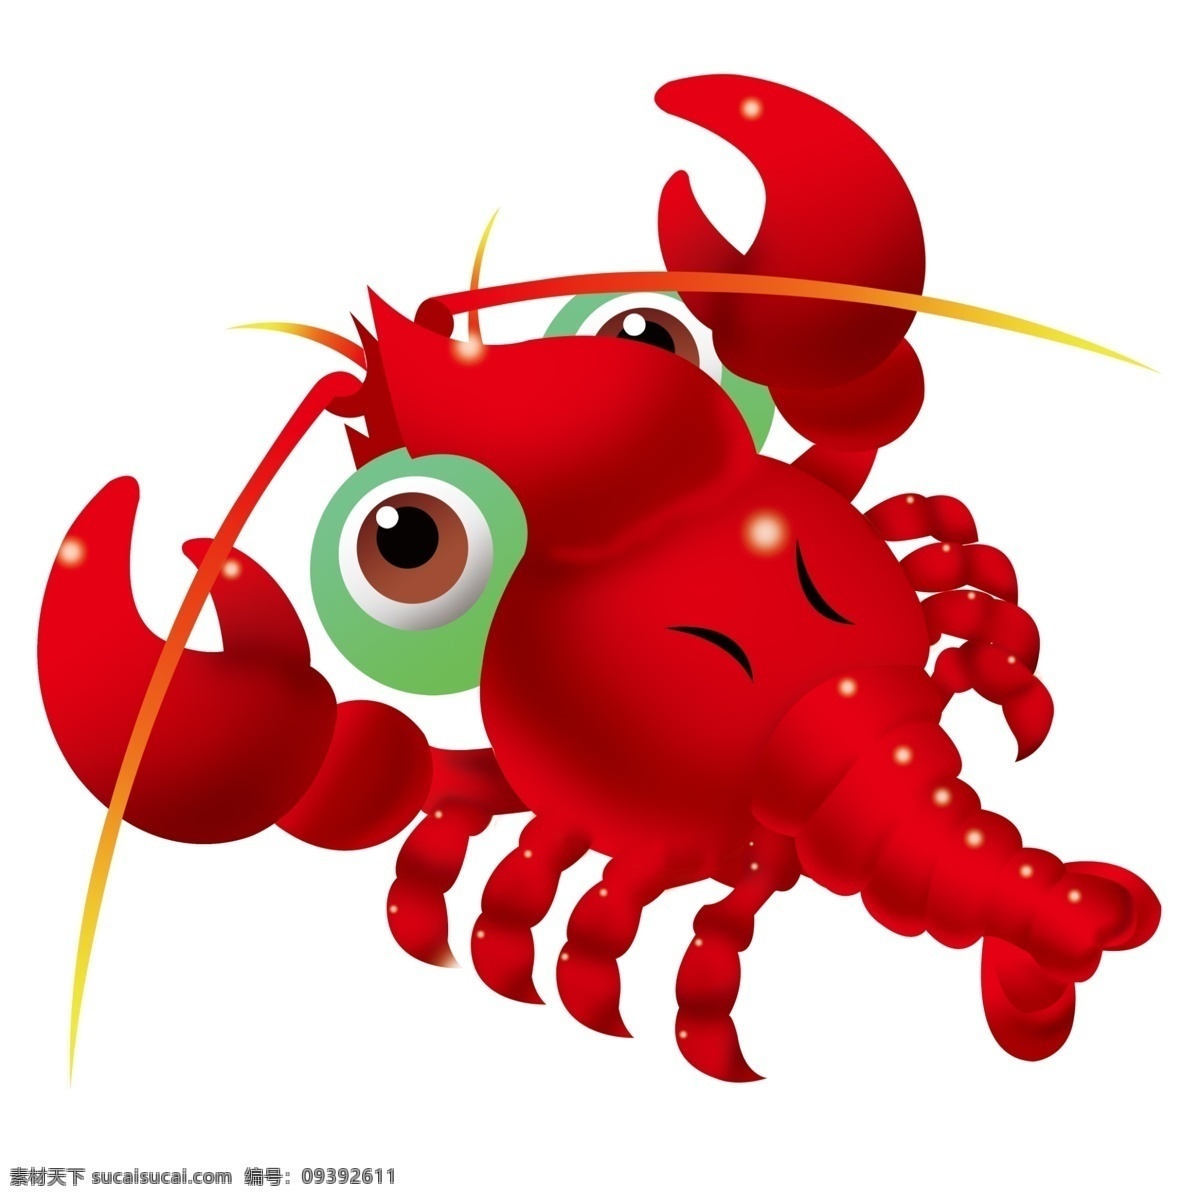 龙虾标志 龙虾 红色 兴旺 海鲜 psd素材 分层